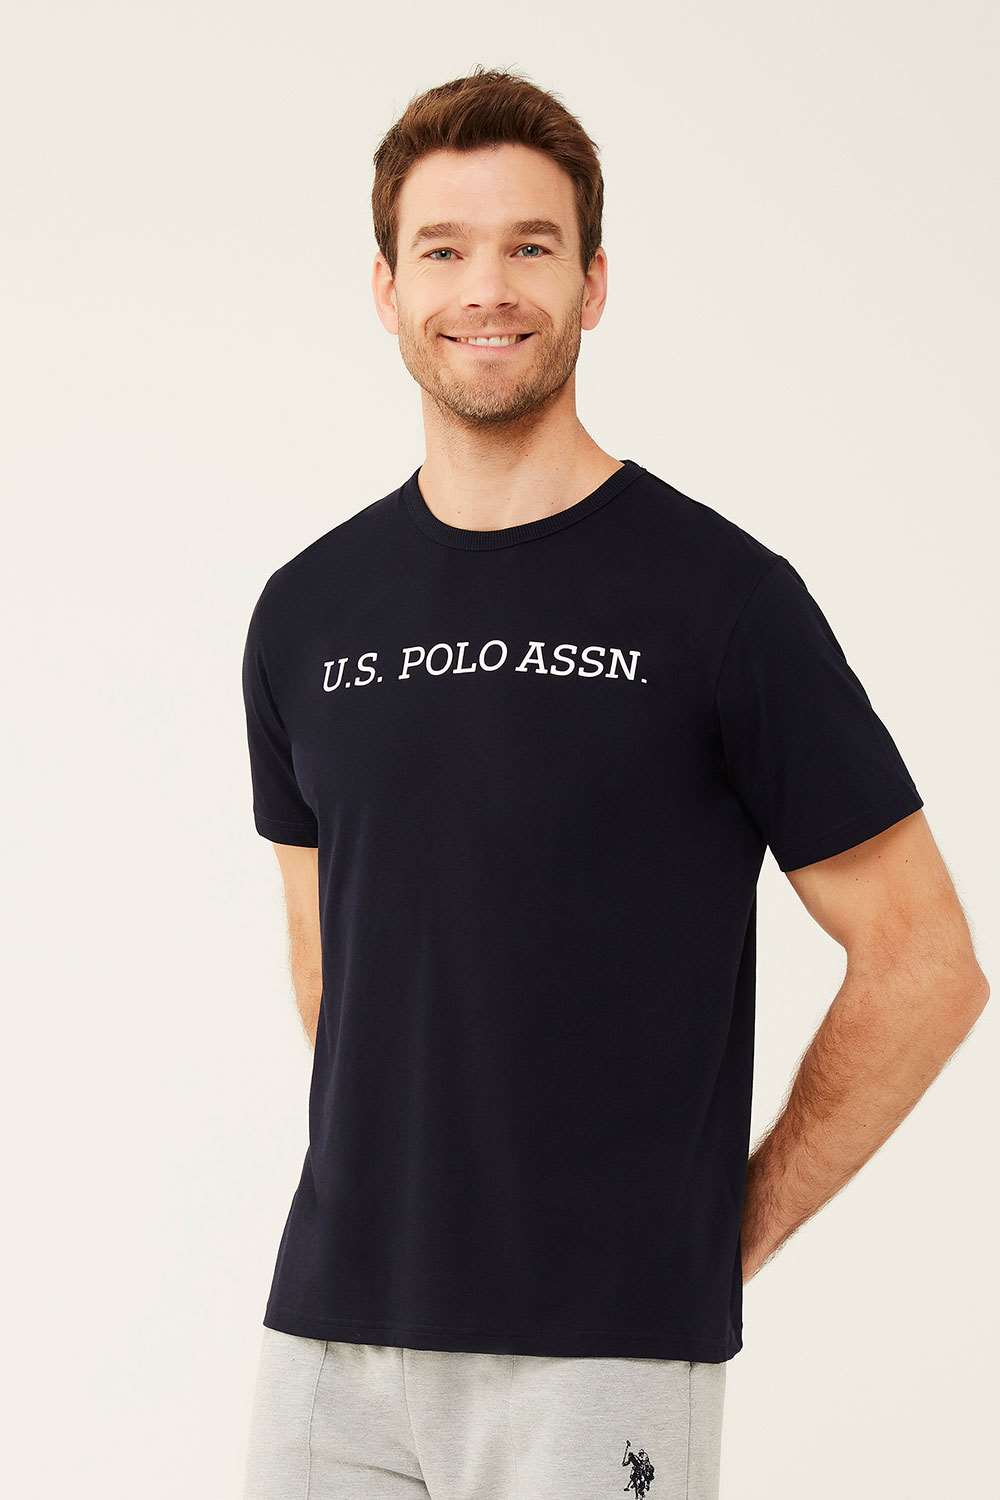 U.S. Polo Assn. Erkek Siyah Yuvarlak Yaka T-shirt | Modcollection.com.tr